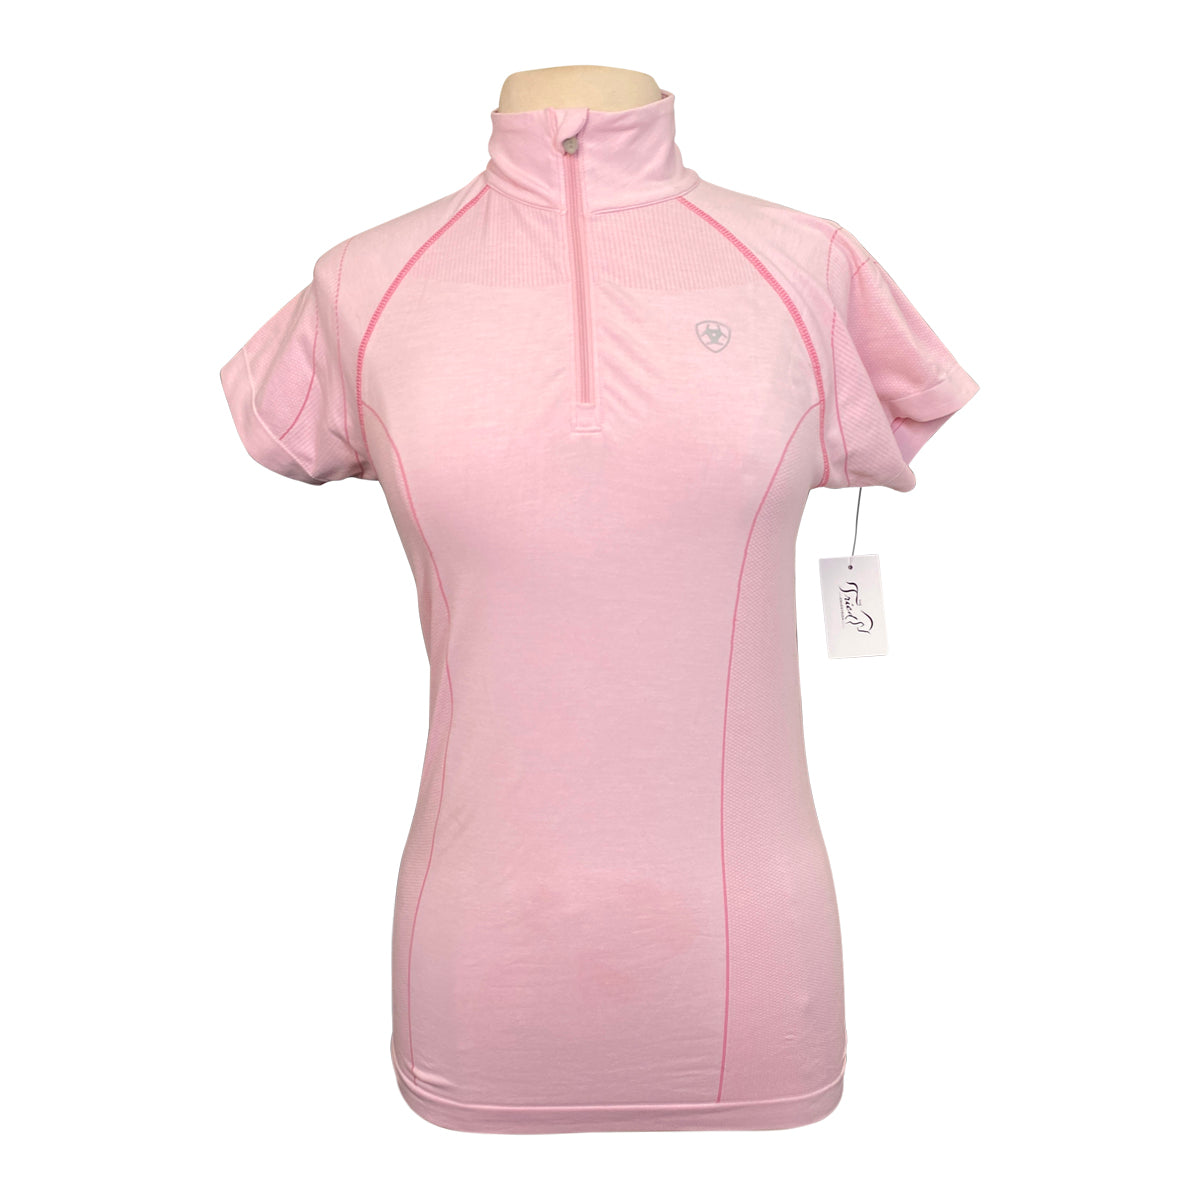 Ariat TEK Heat Series Polo Shirt in Carnation Pink